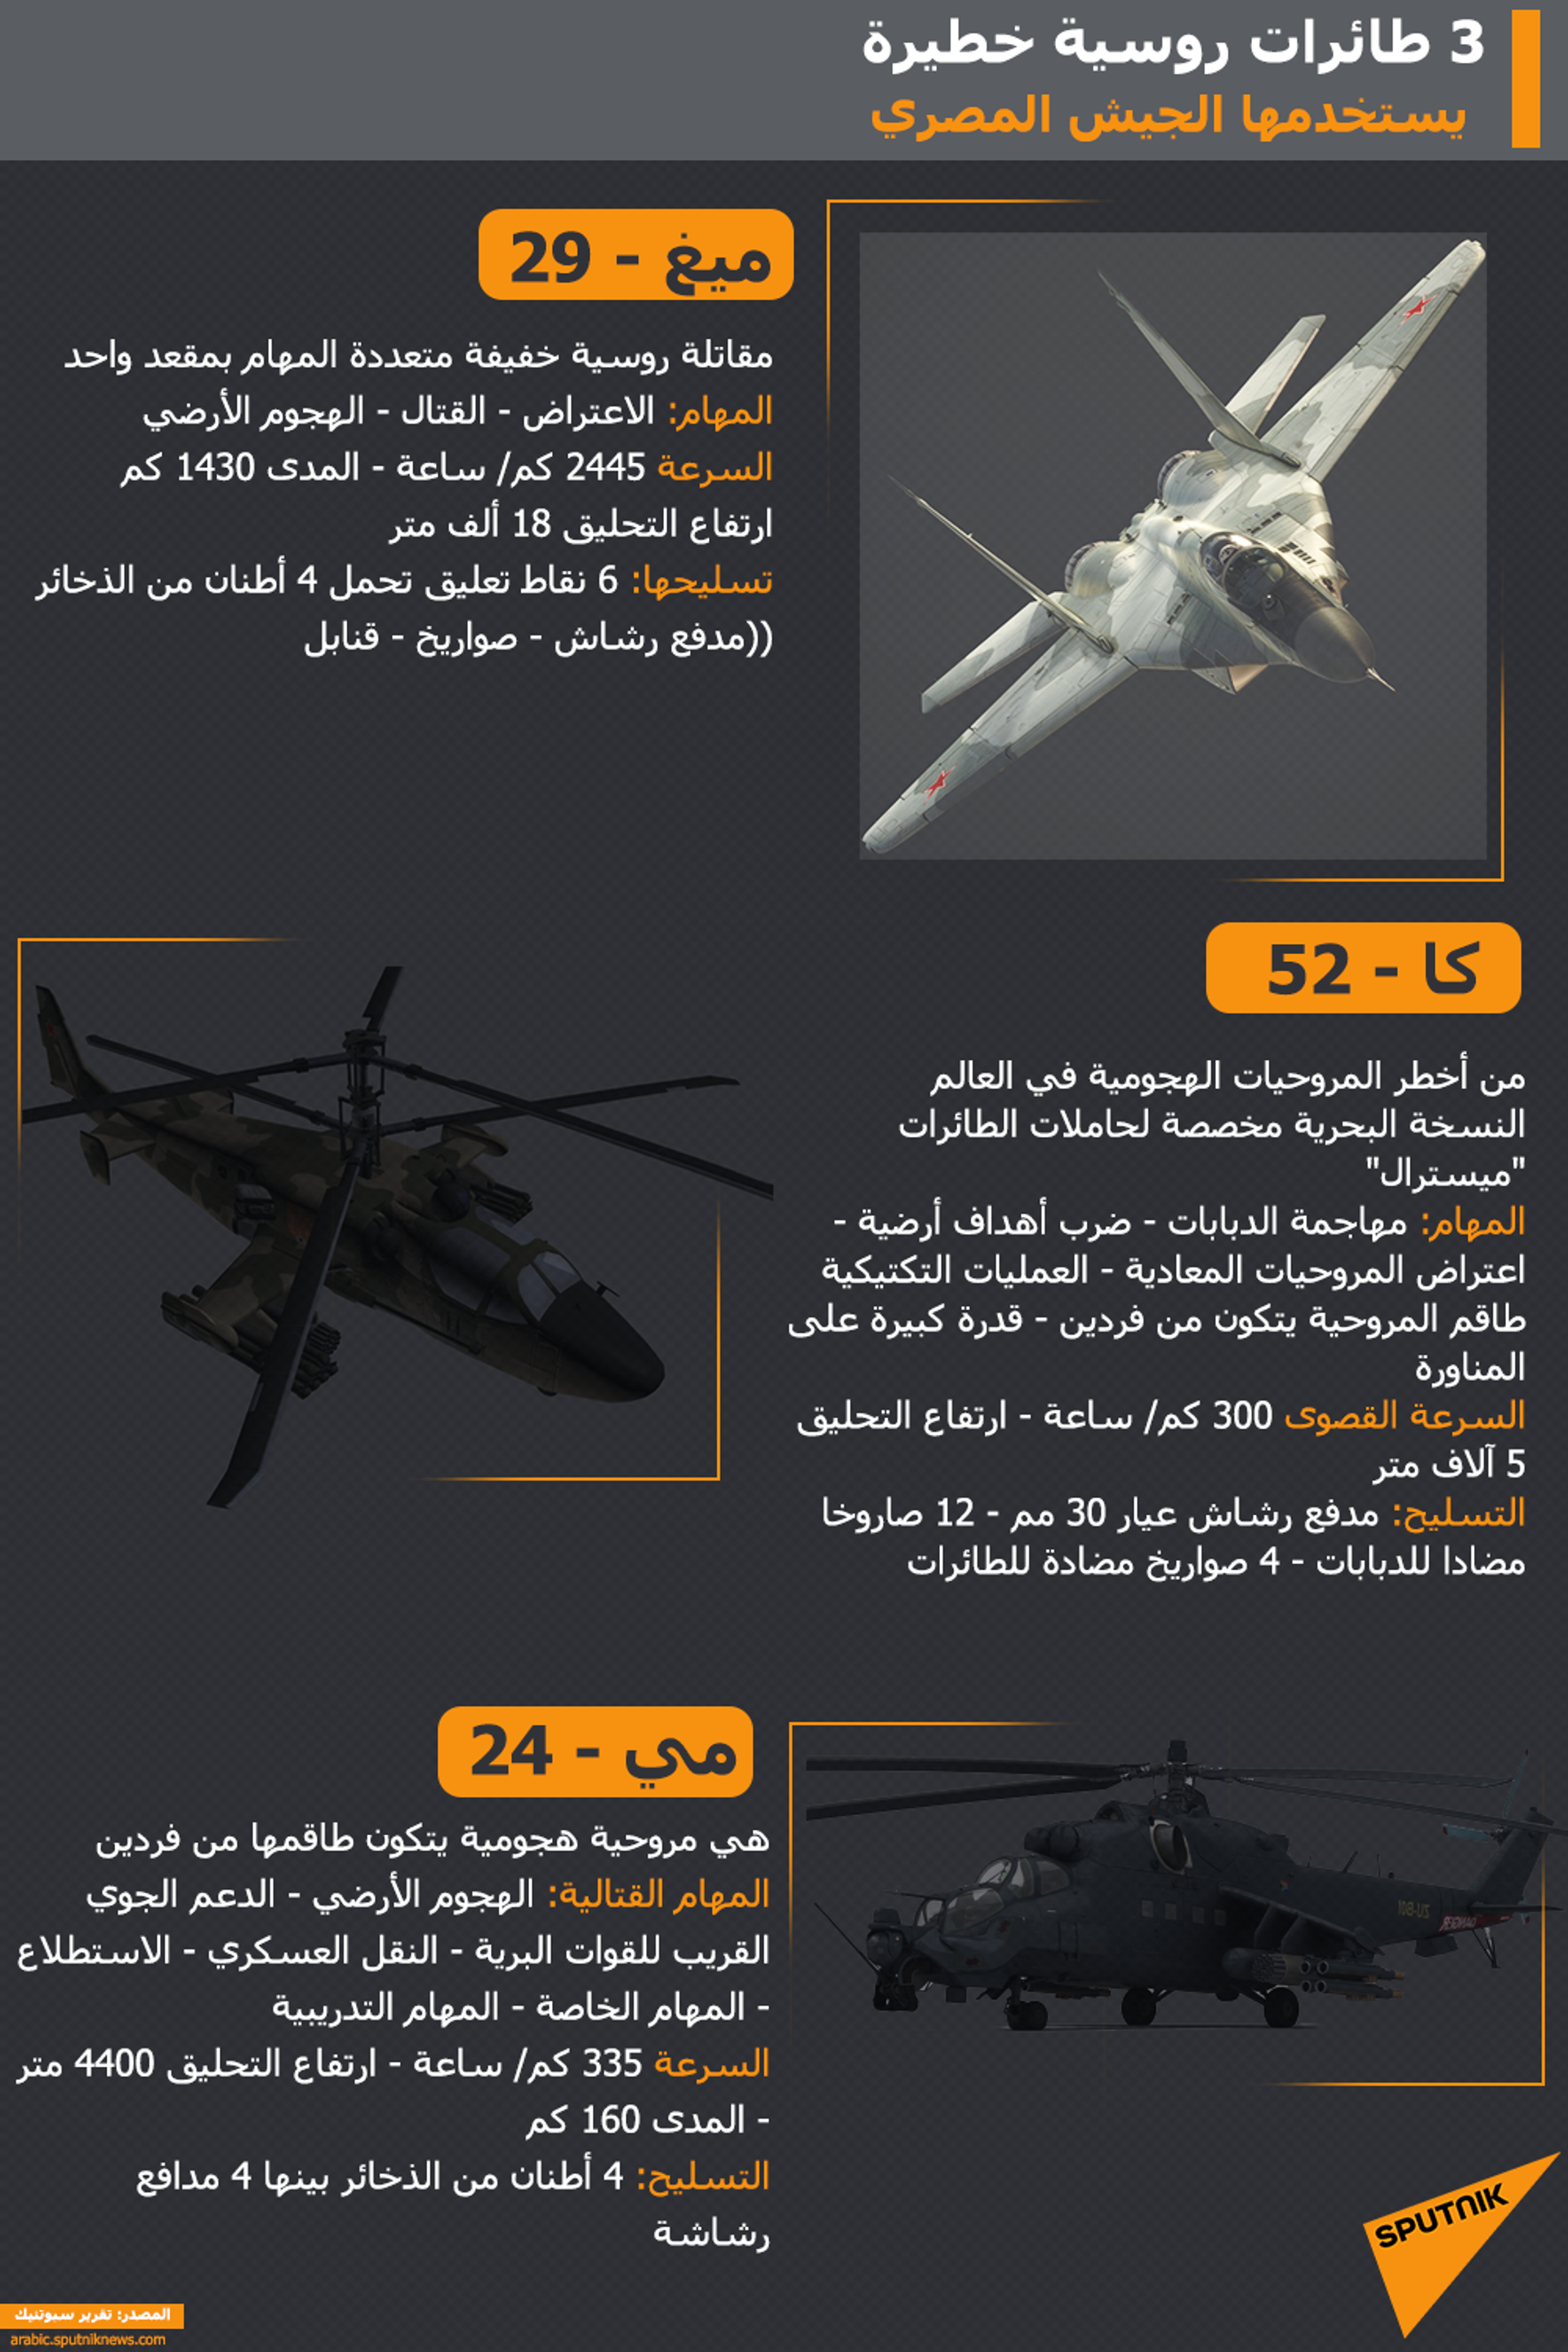 بعد ظهورها بـ نسور النيل... معلومات عن مقاتلات ميغ - 29 التي يستخدمها الجيش المصري - سبوتنيك عربي, 1920, 08.04.2021